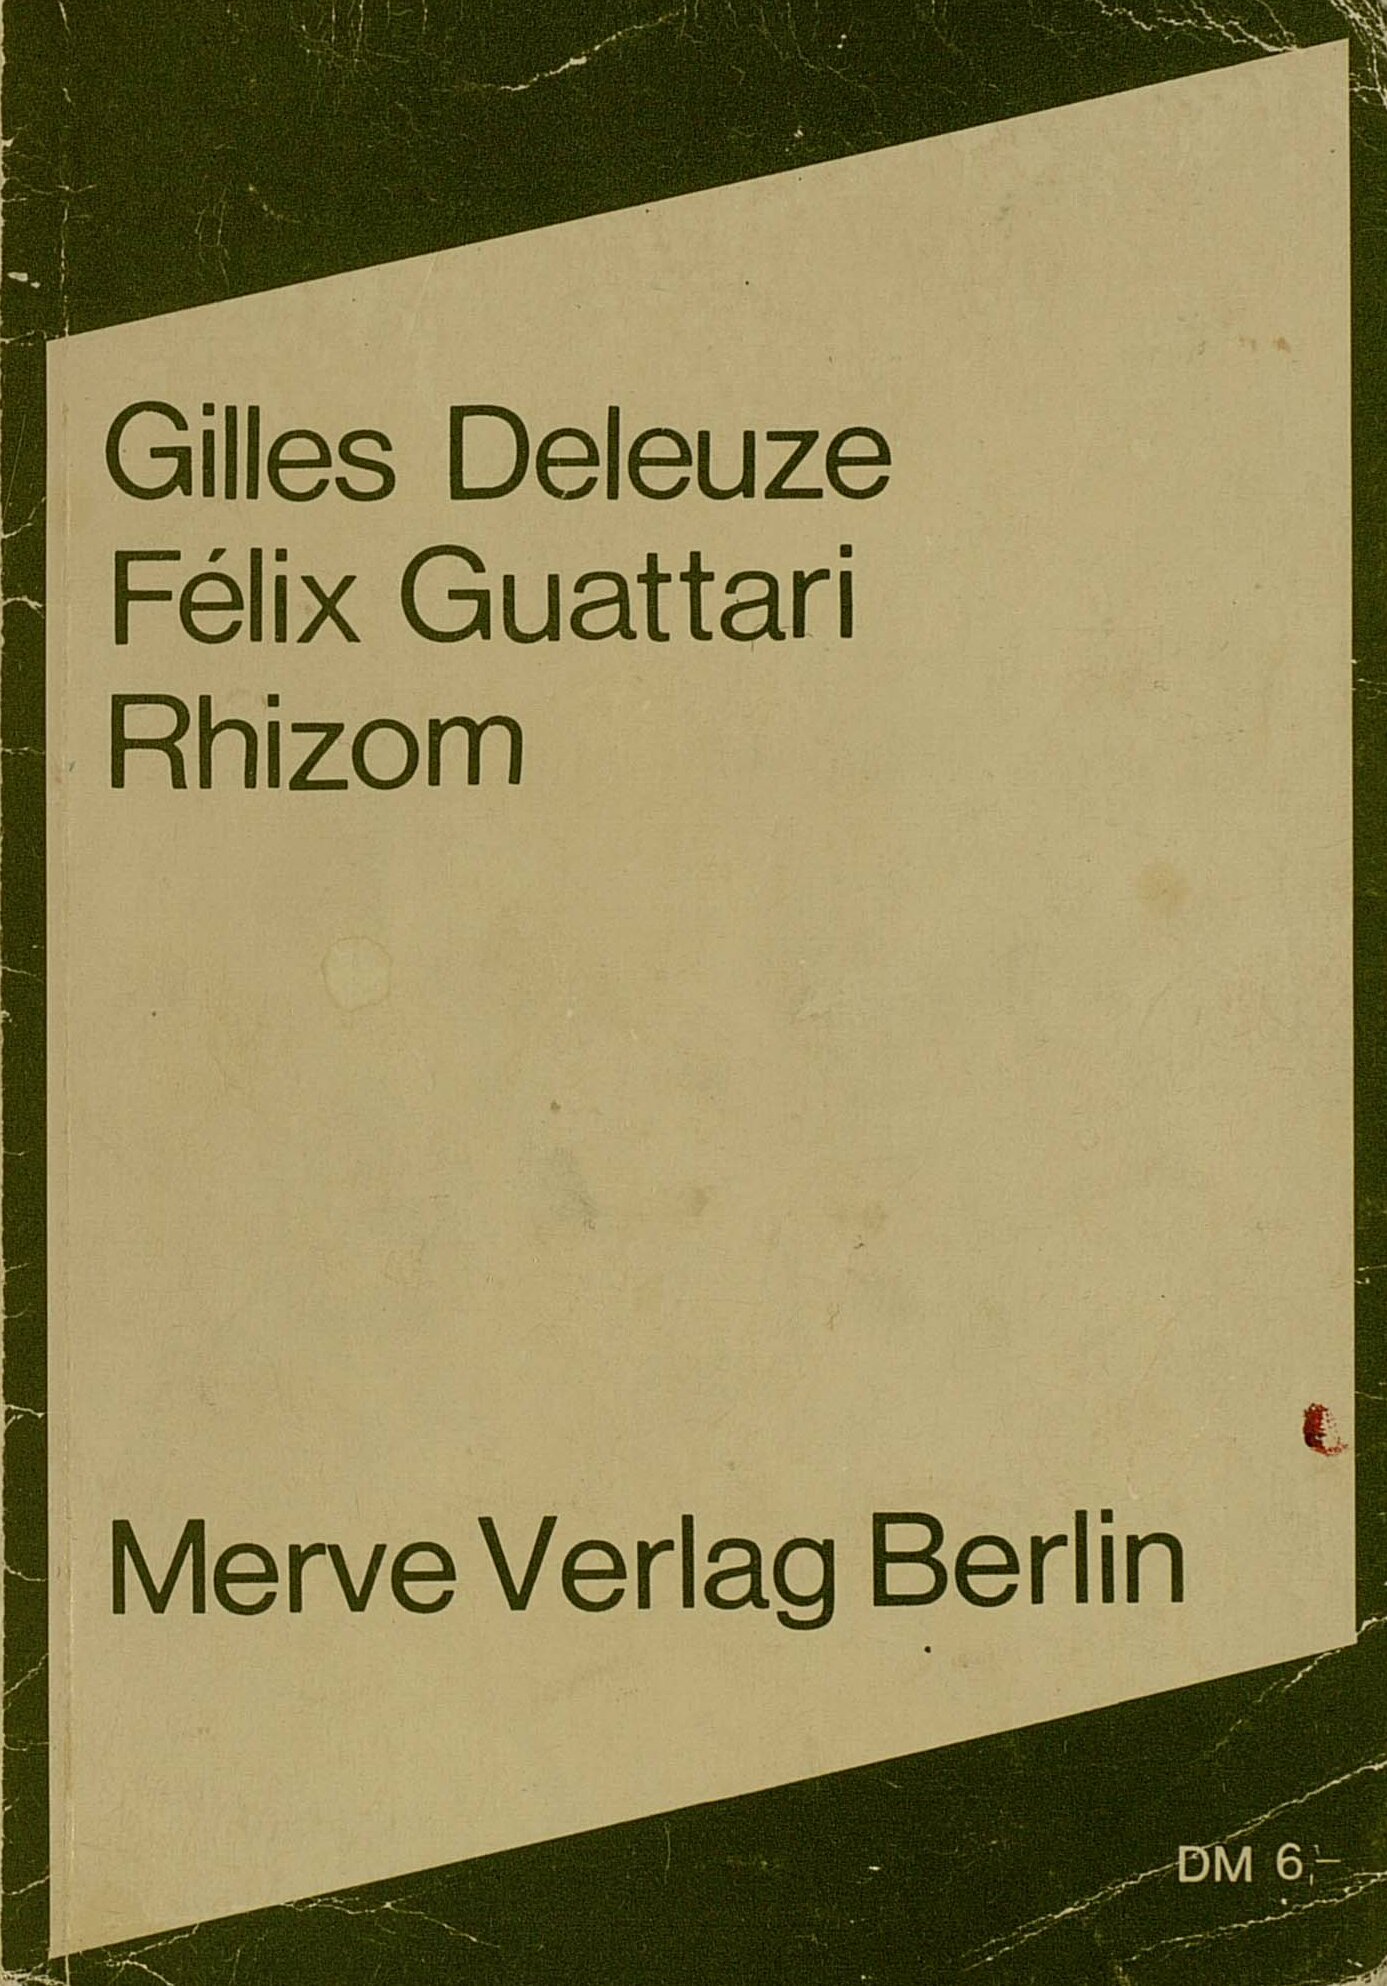 Buchcover von Gilles Deleute und Félix Guattaris "Rhizom"